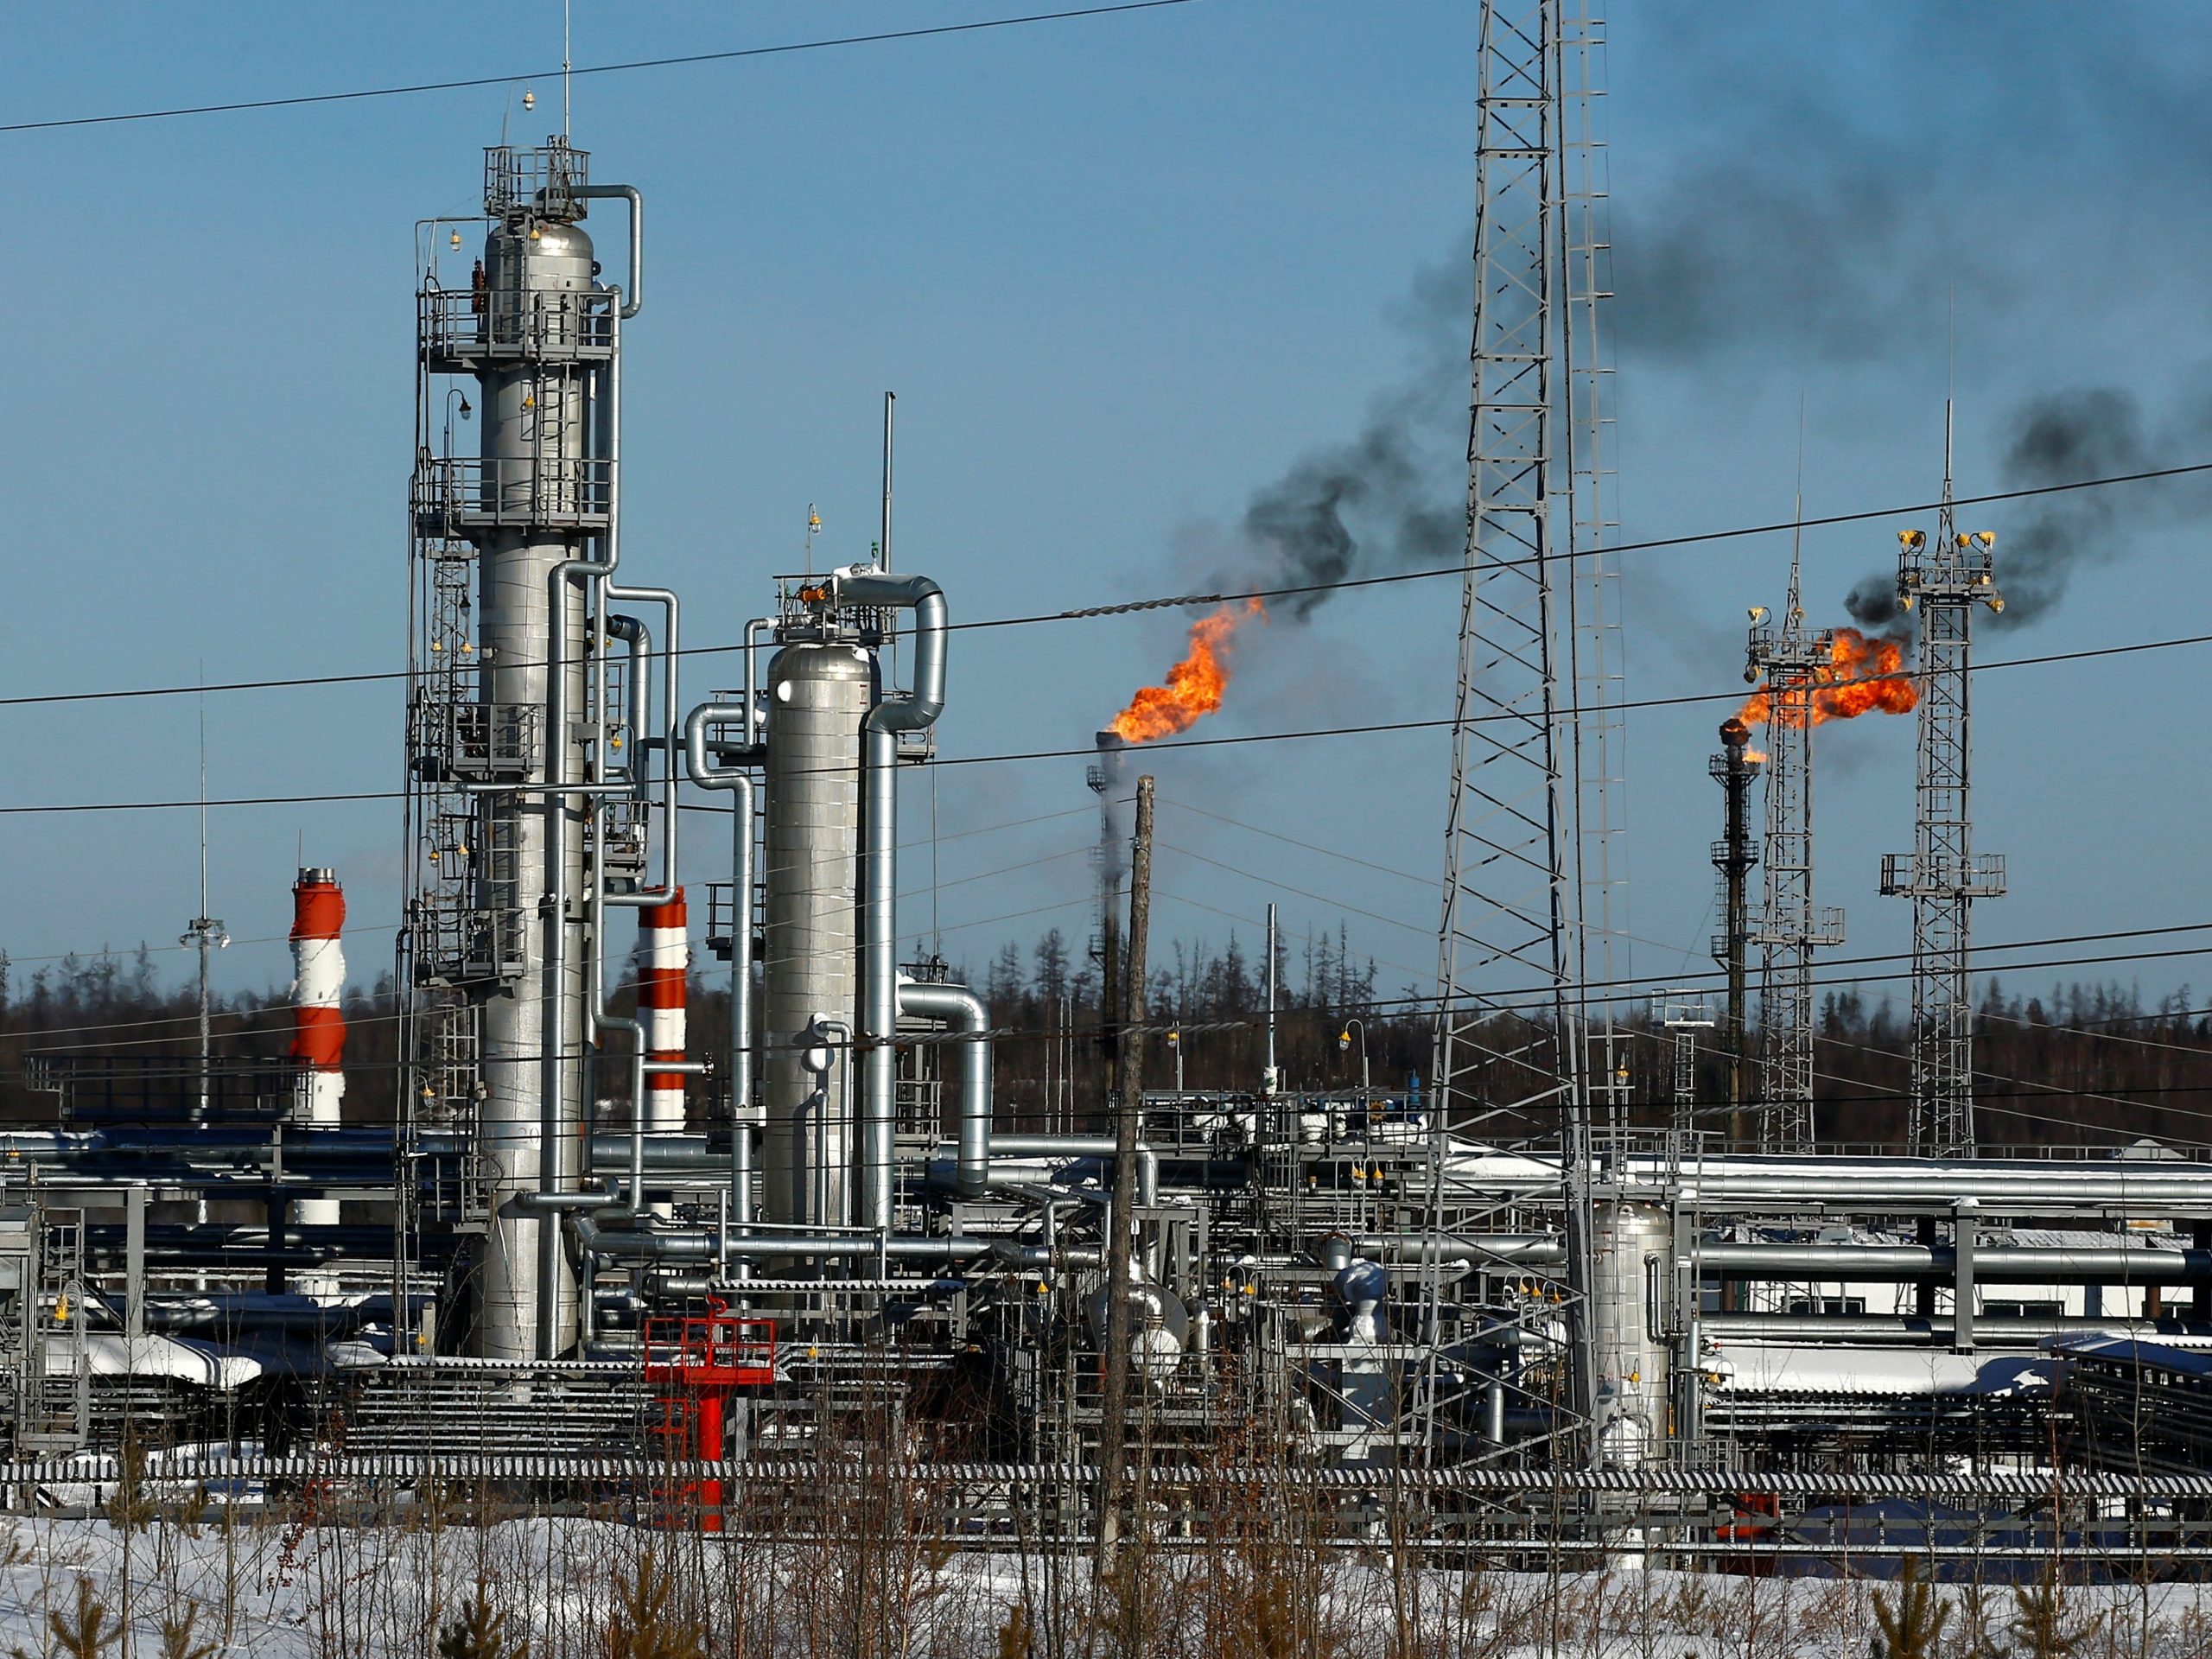 Nederland in maart voor €2 olie uit Rusland